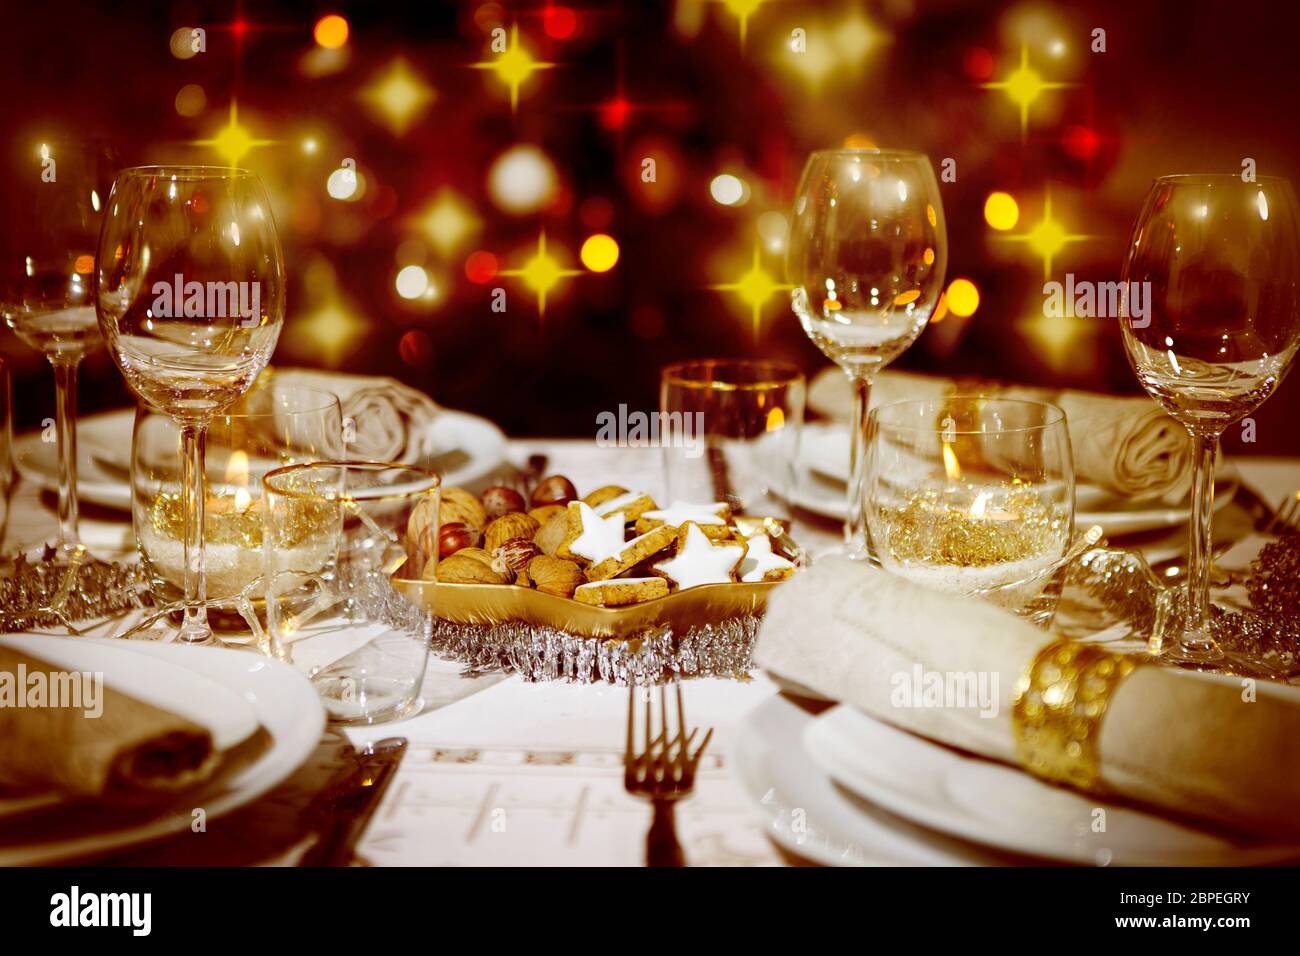 Ein festlich gedeckter Tisch, im Hintergrund ein bunter Weihnachtsbaum Foto Stock